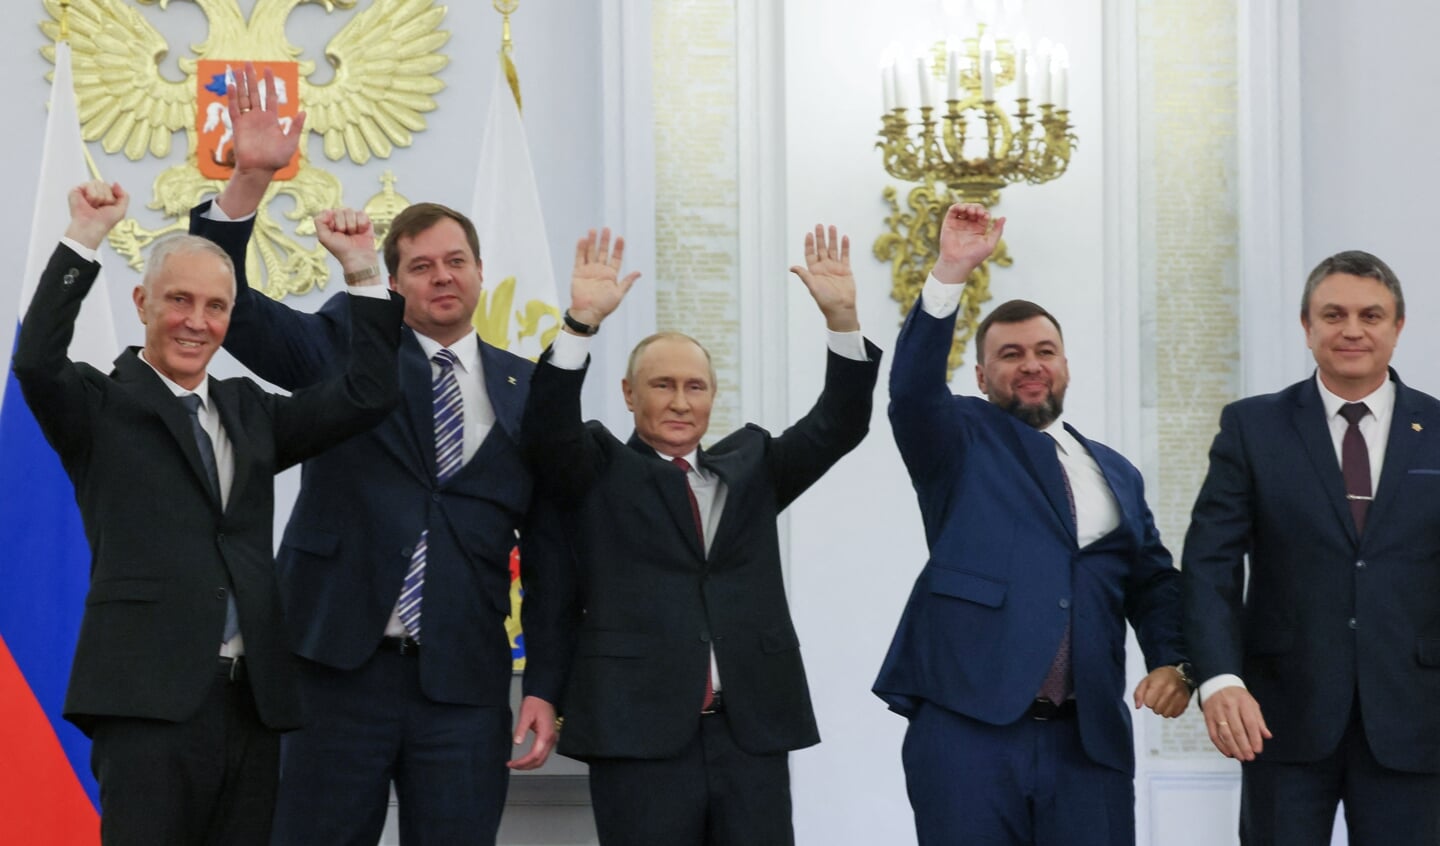 President Poetin met de leiders van de vier geannexeerde gebieden, na de ceremonie in het Kremlin.